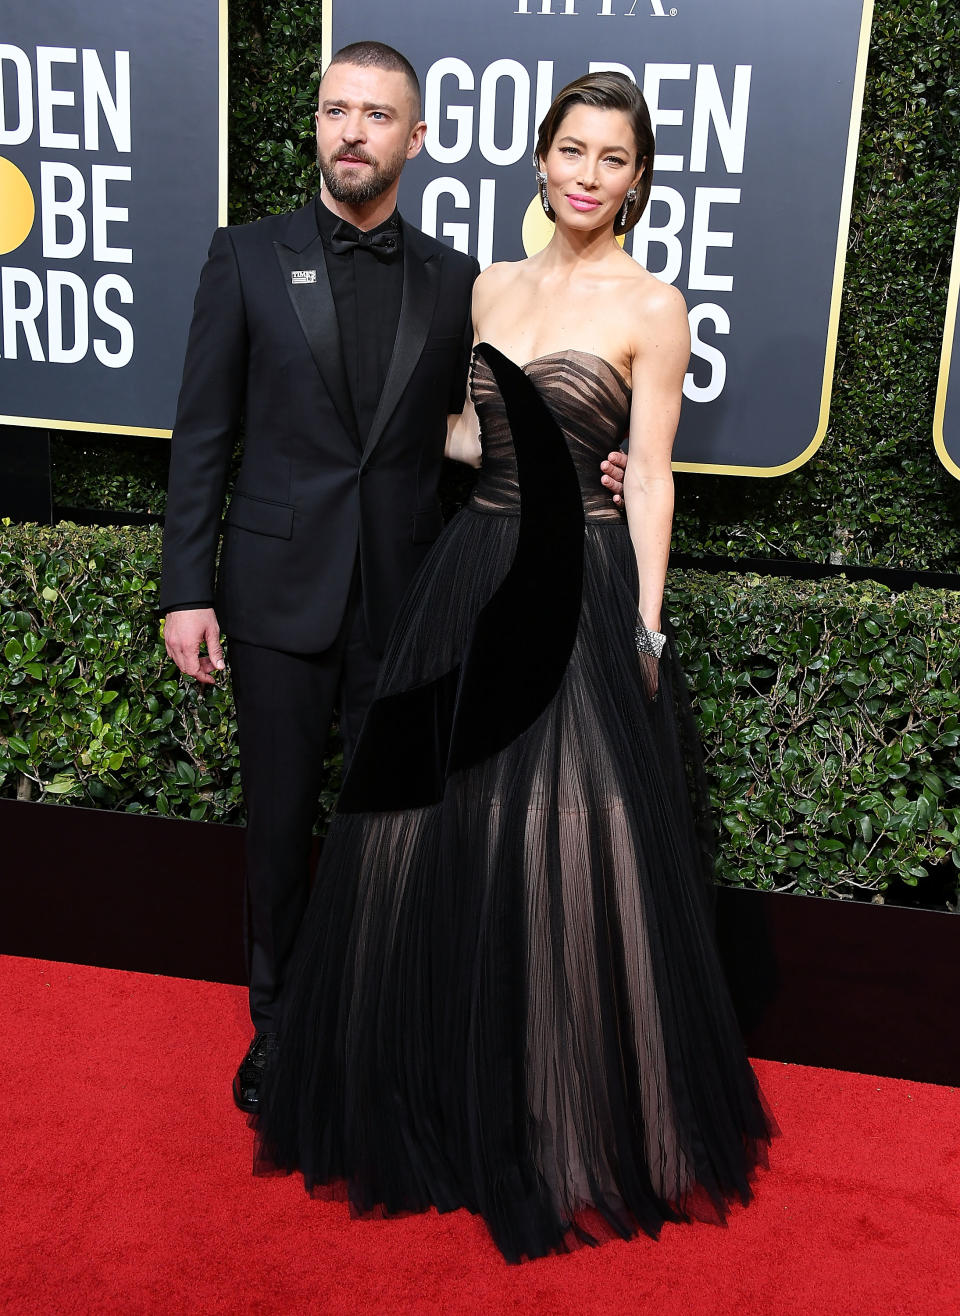 Golden Globes : les stars vêtues de noir